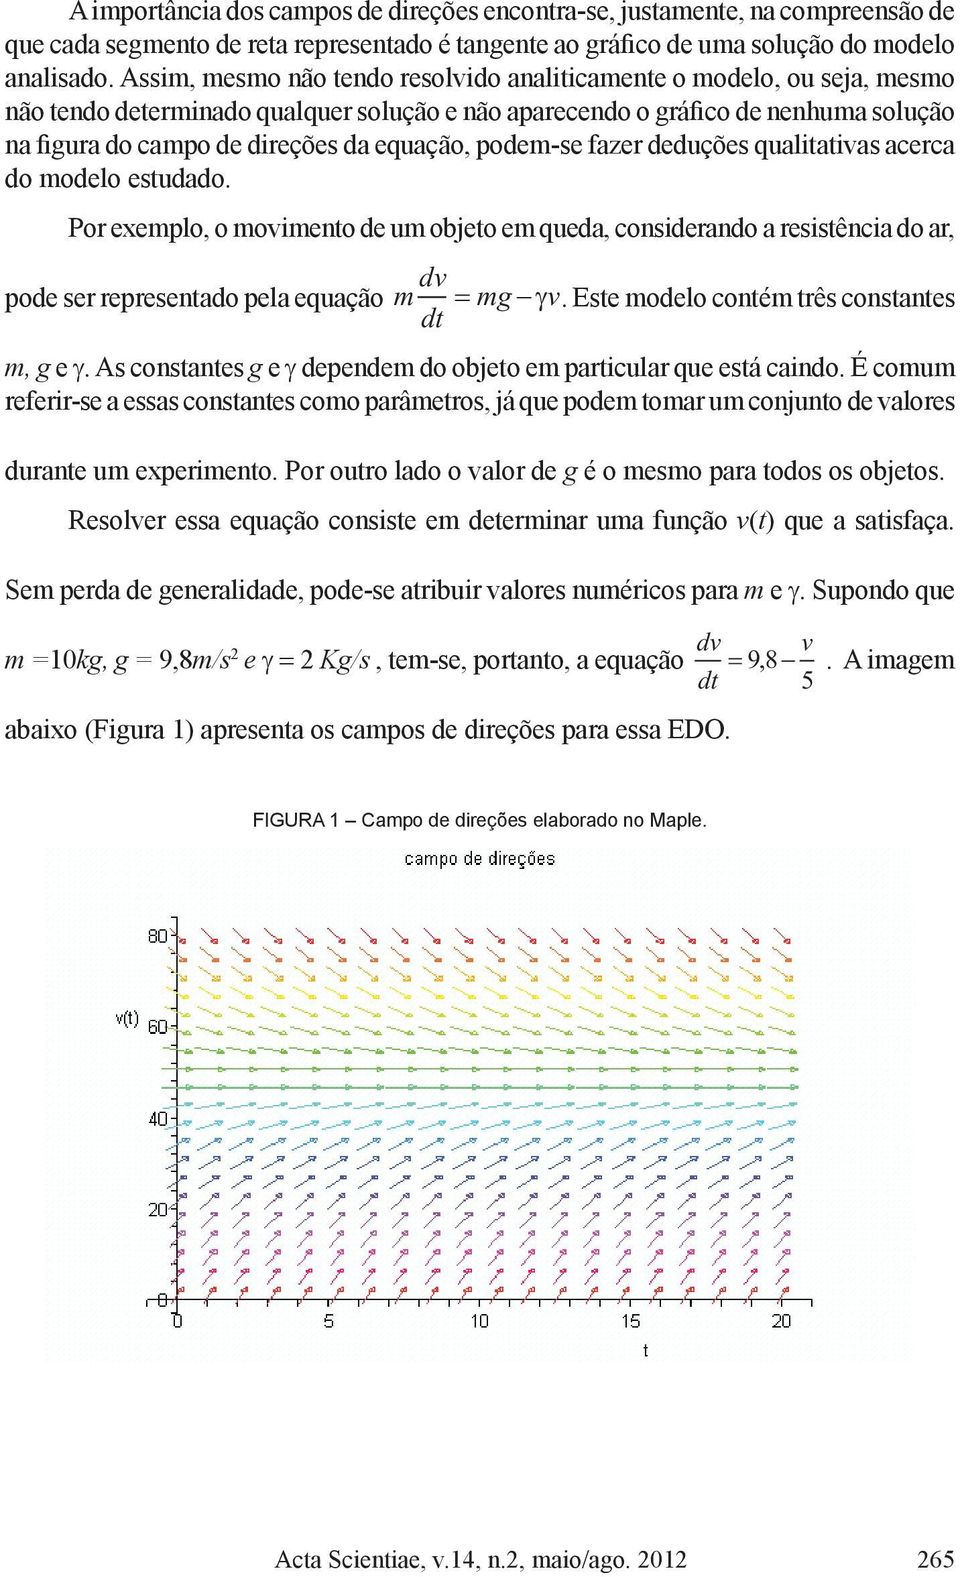 equação, podem-se fazer deduções qualitativas acerca do modelo estudado. Por exemplo, o movimento de um objeto em queda, considerando a resistência do ar, pode ser representado pela equação dv m mg v.